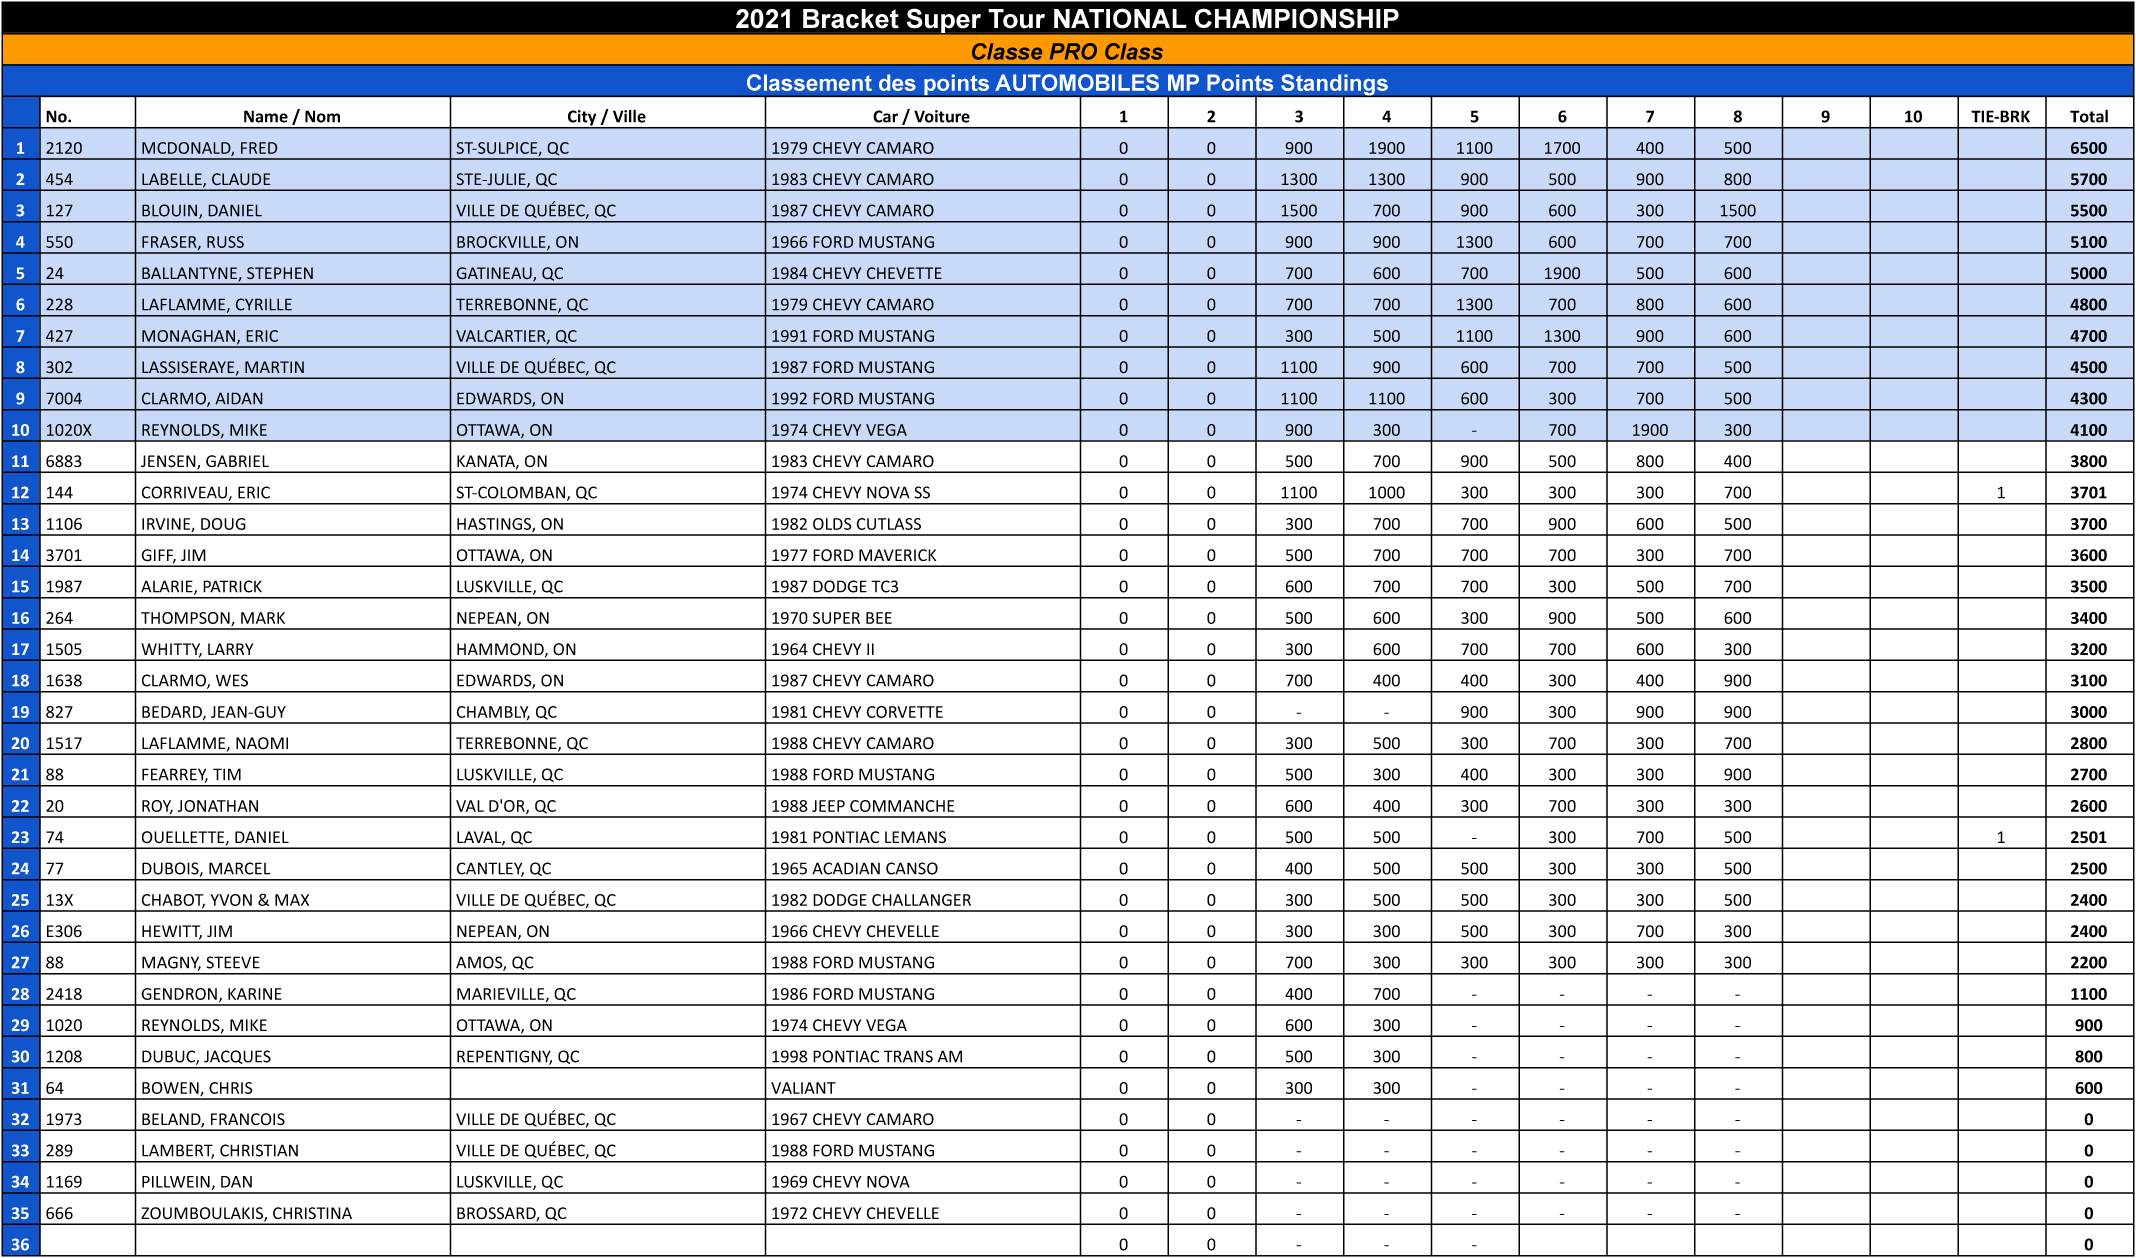 Bracket Super Tour - 2021 Pro Points Standings